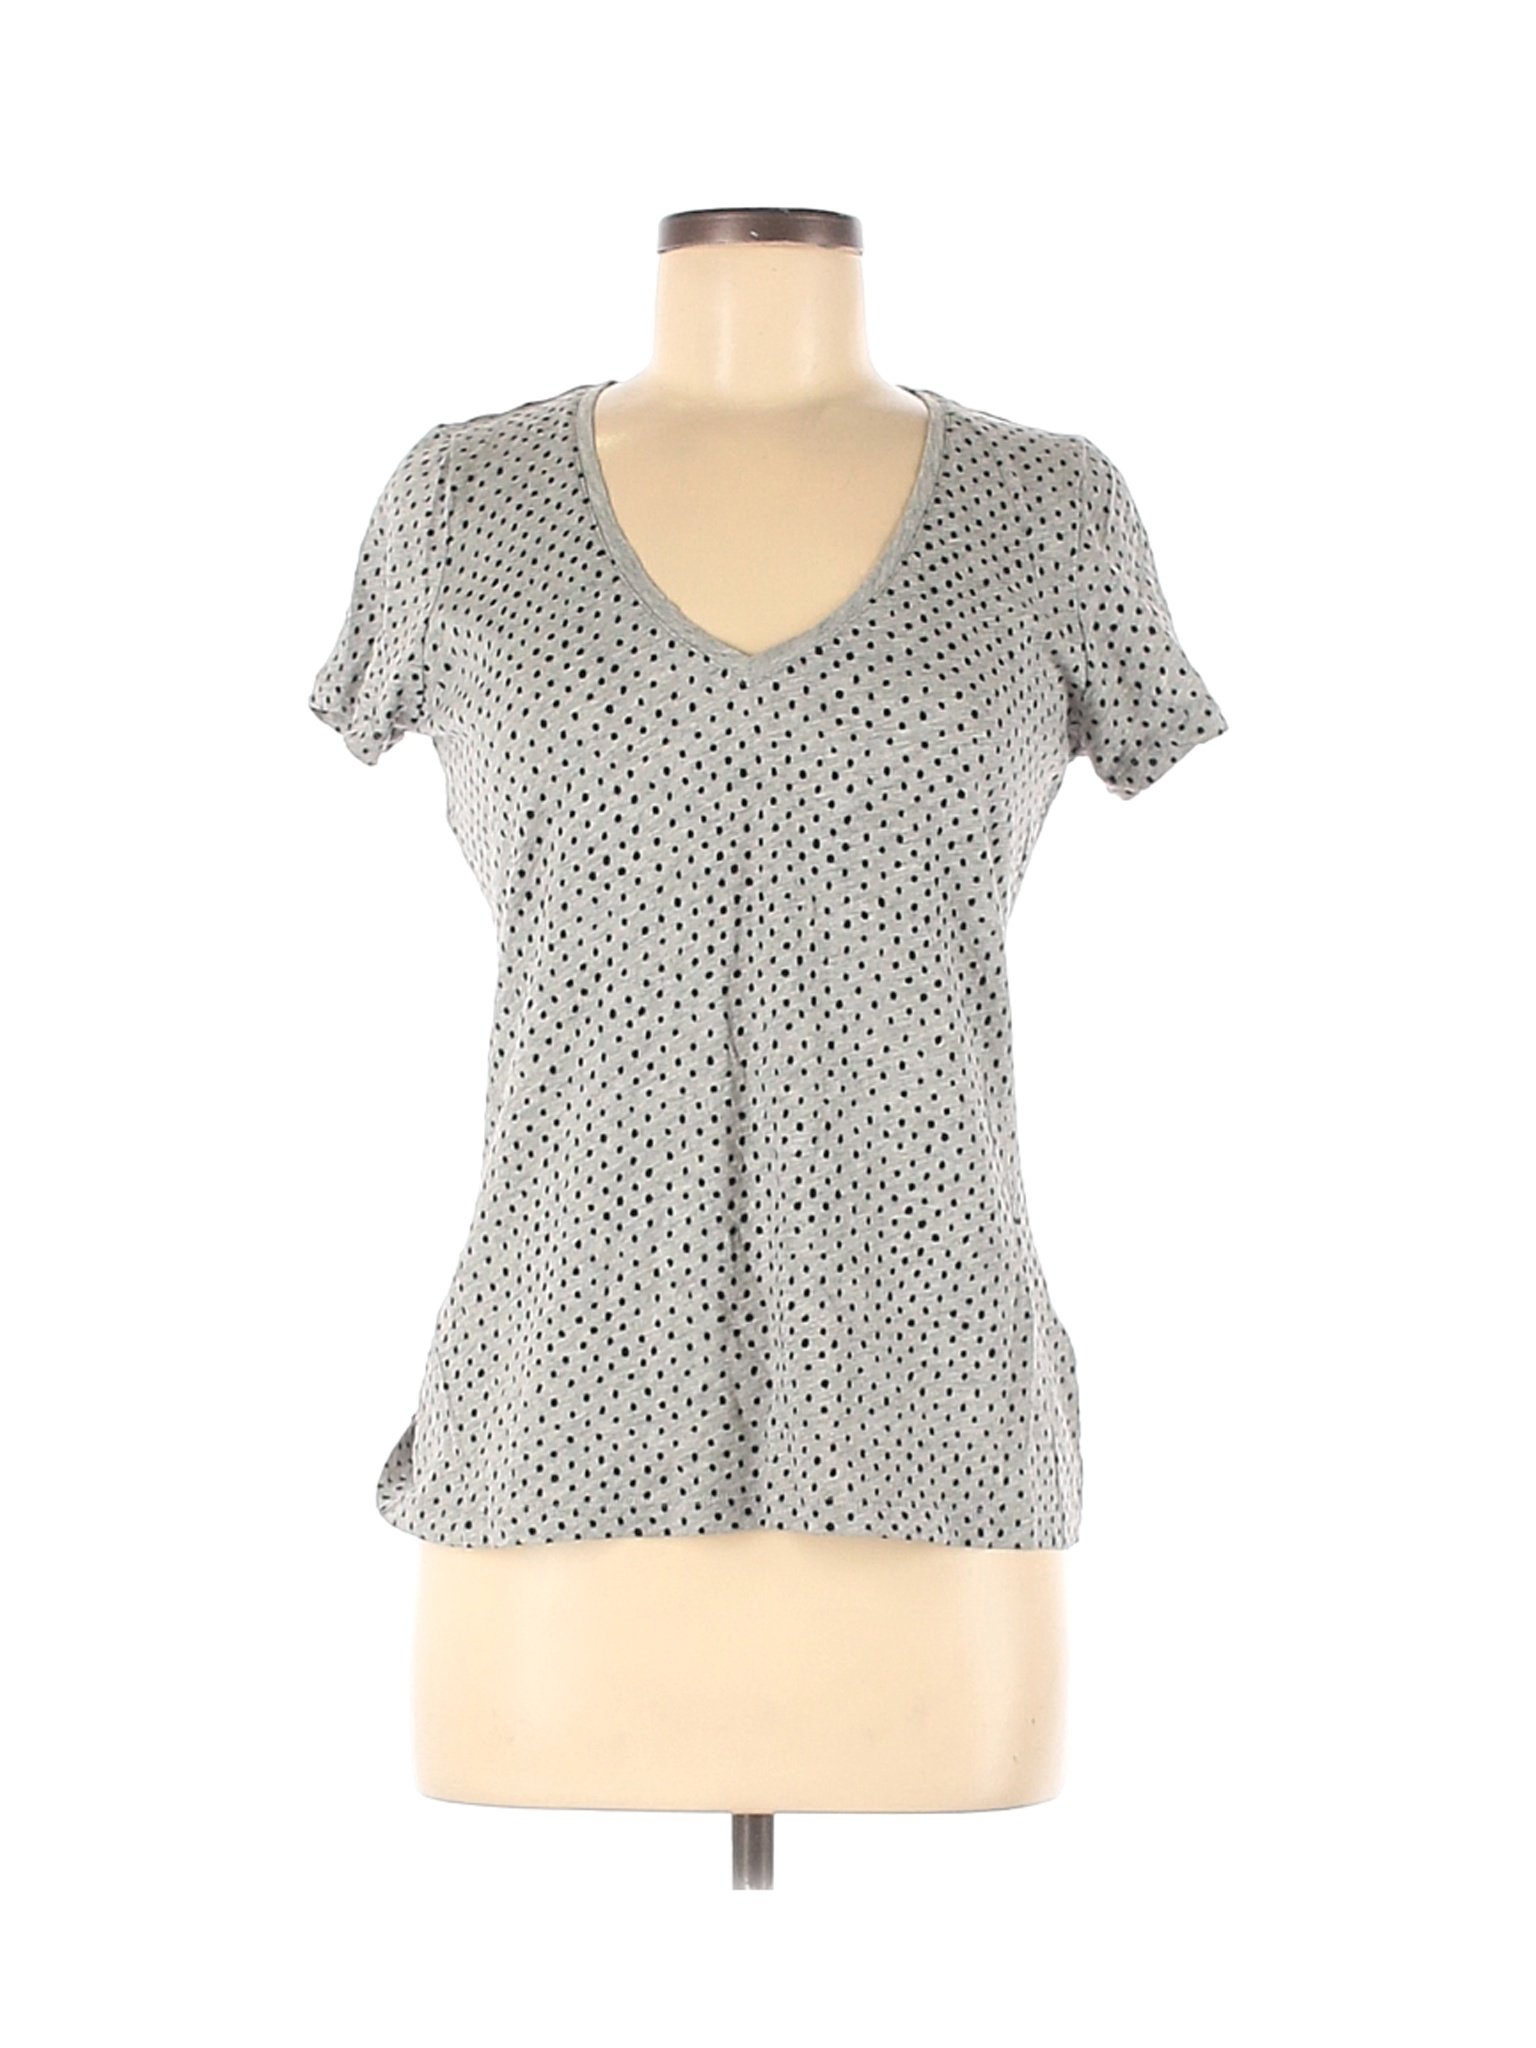 Boden Women Gray Short Sleeve T-Shirt 8 | eBay